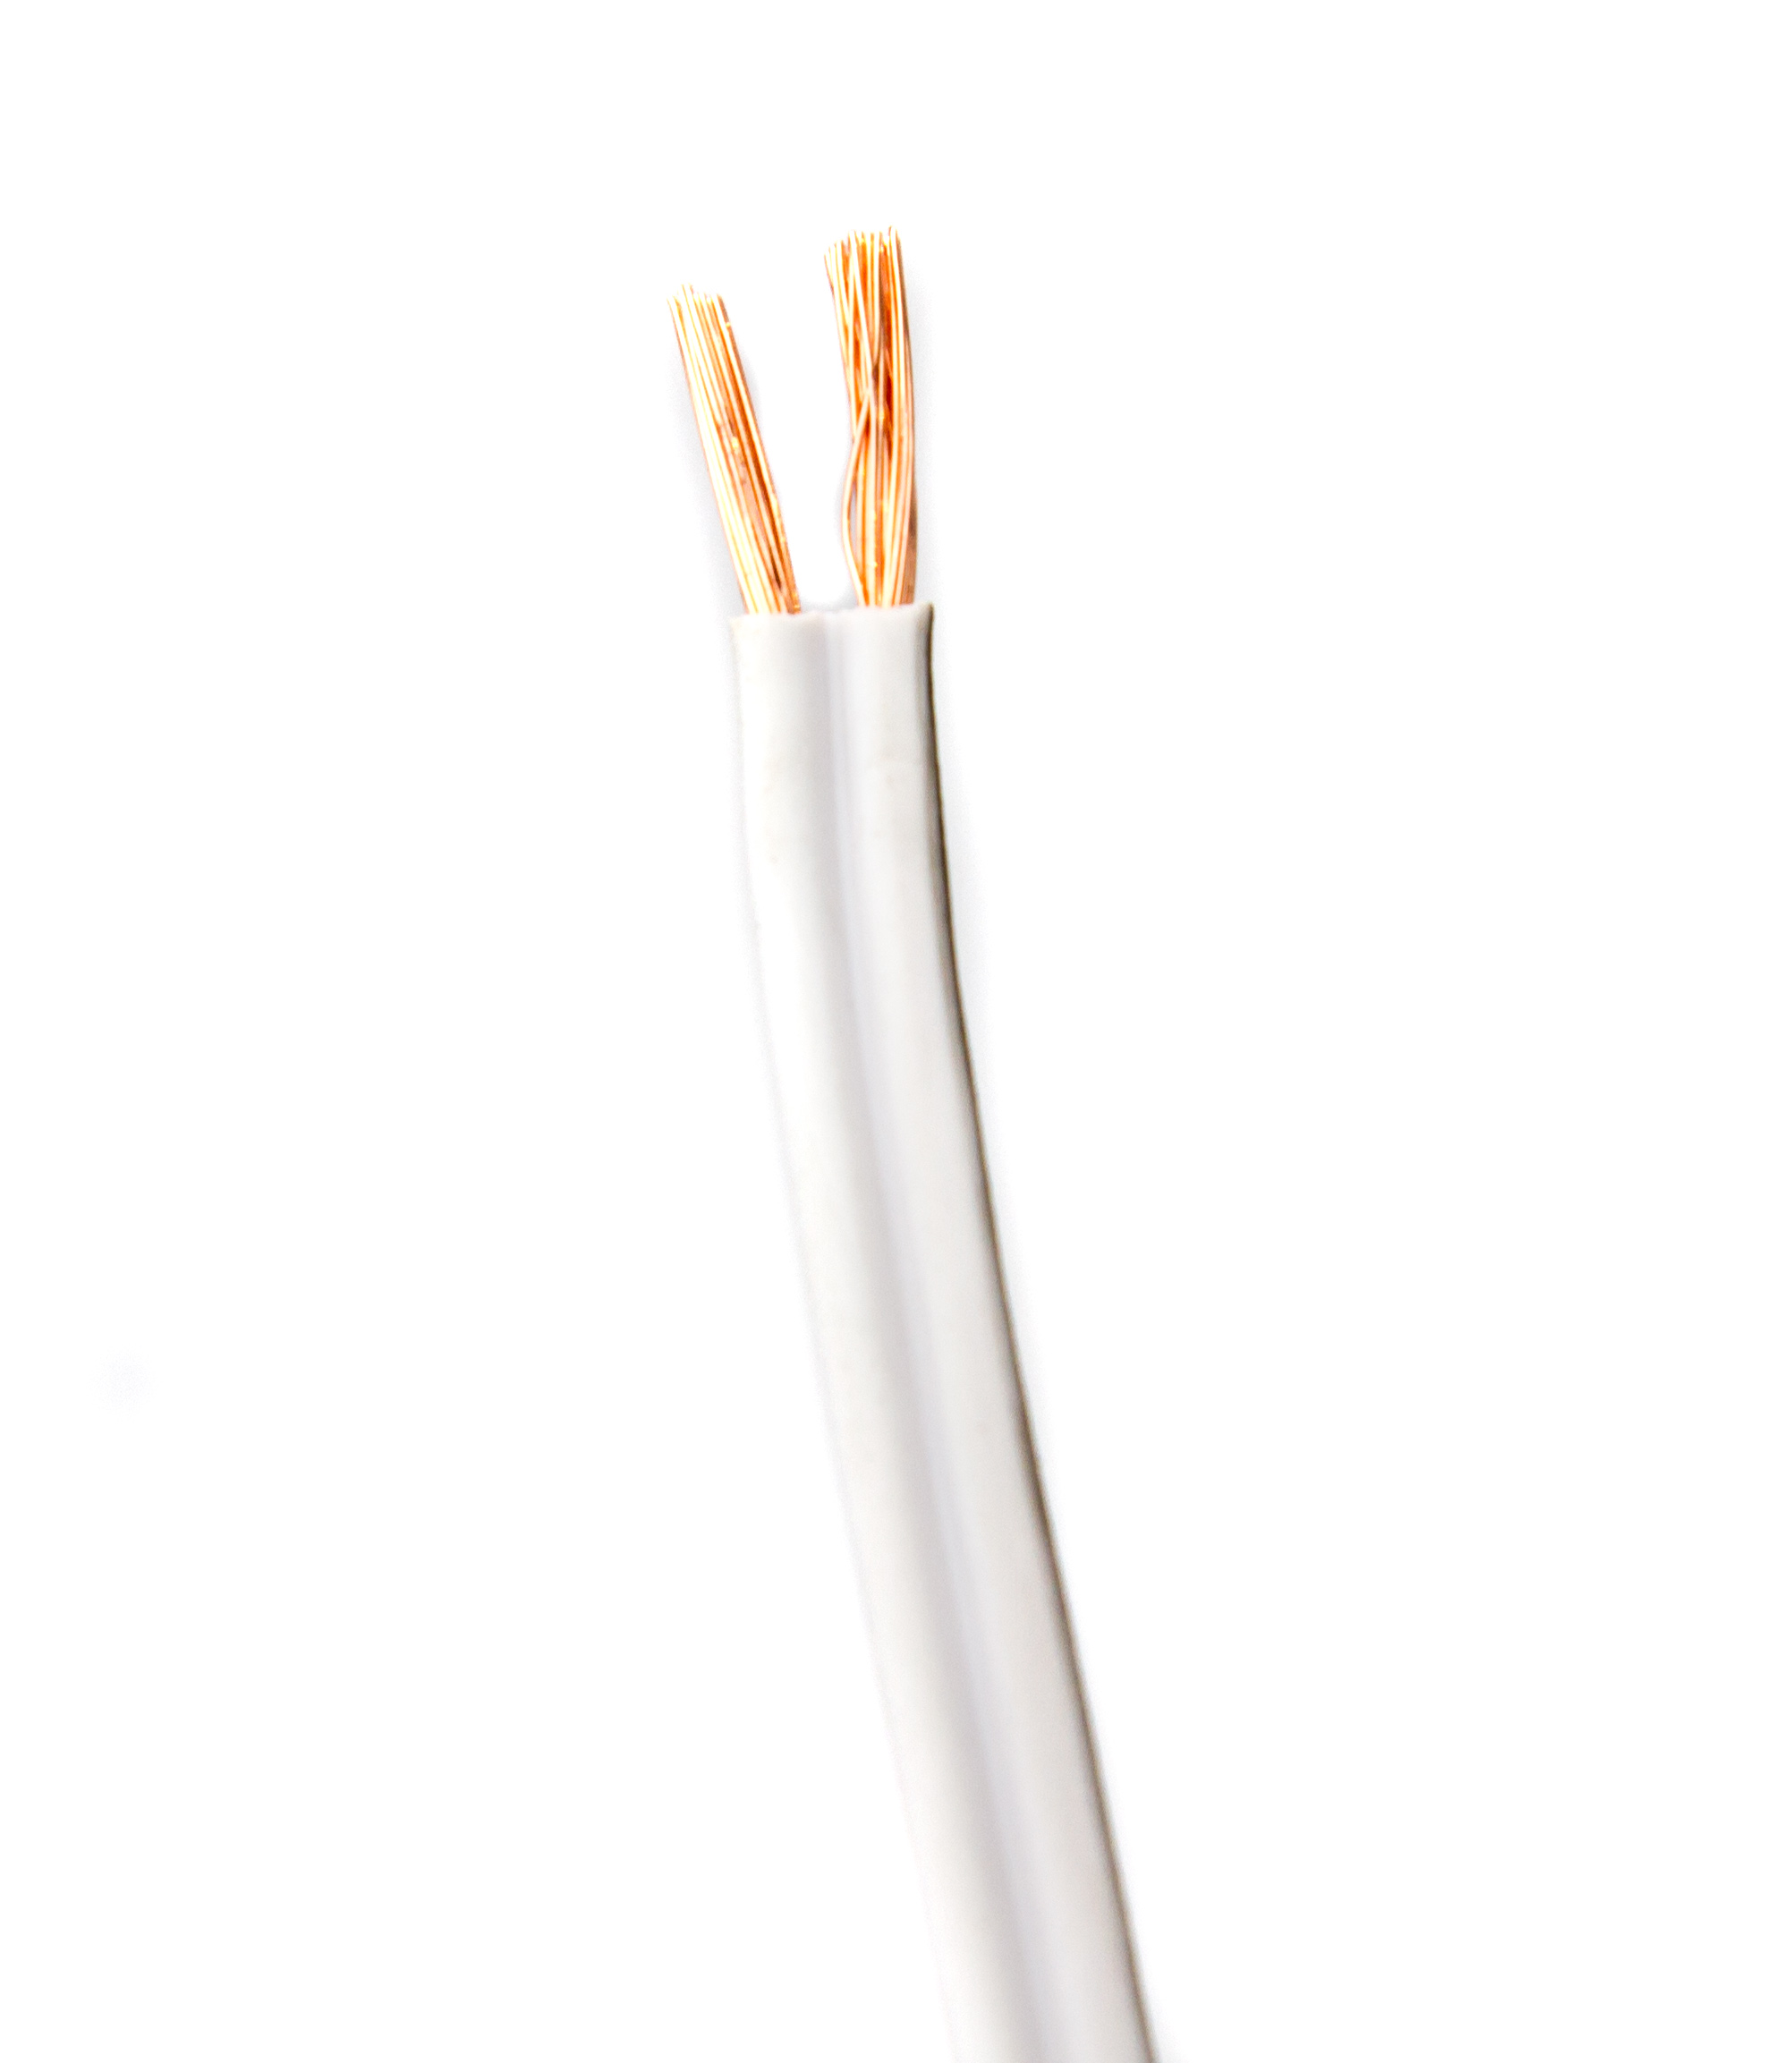 Zwillingslitze 2x 0,75 qmm, LIYZ weiß, 2-adriges Kabel, flexibles  Litzenkabel, Lautsprecherkabel, Kabel / Stecker / Zubehör, Abverkauf, SHOWTECHNIK